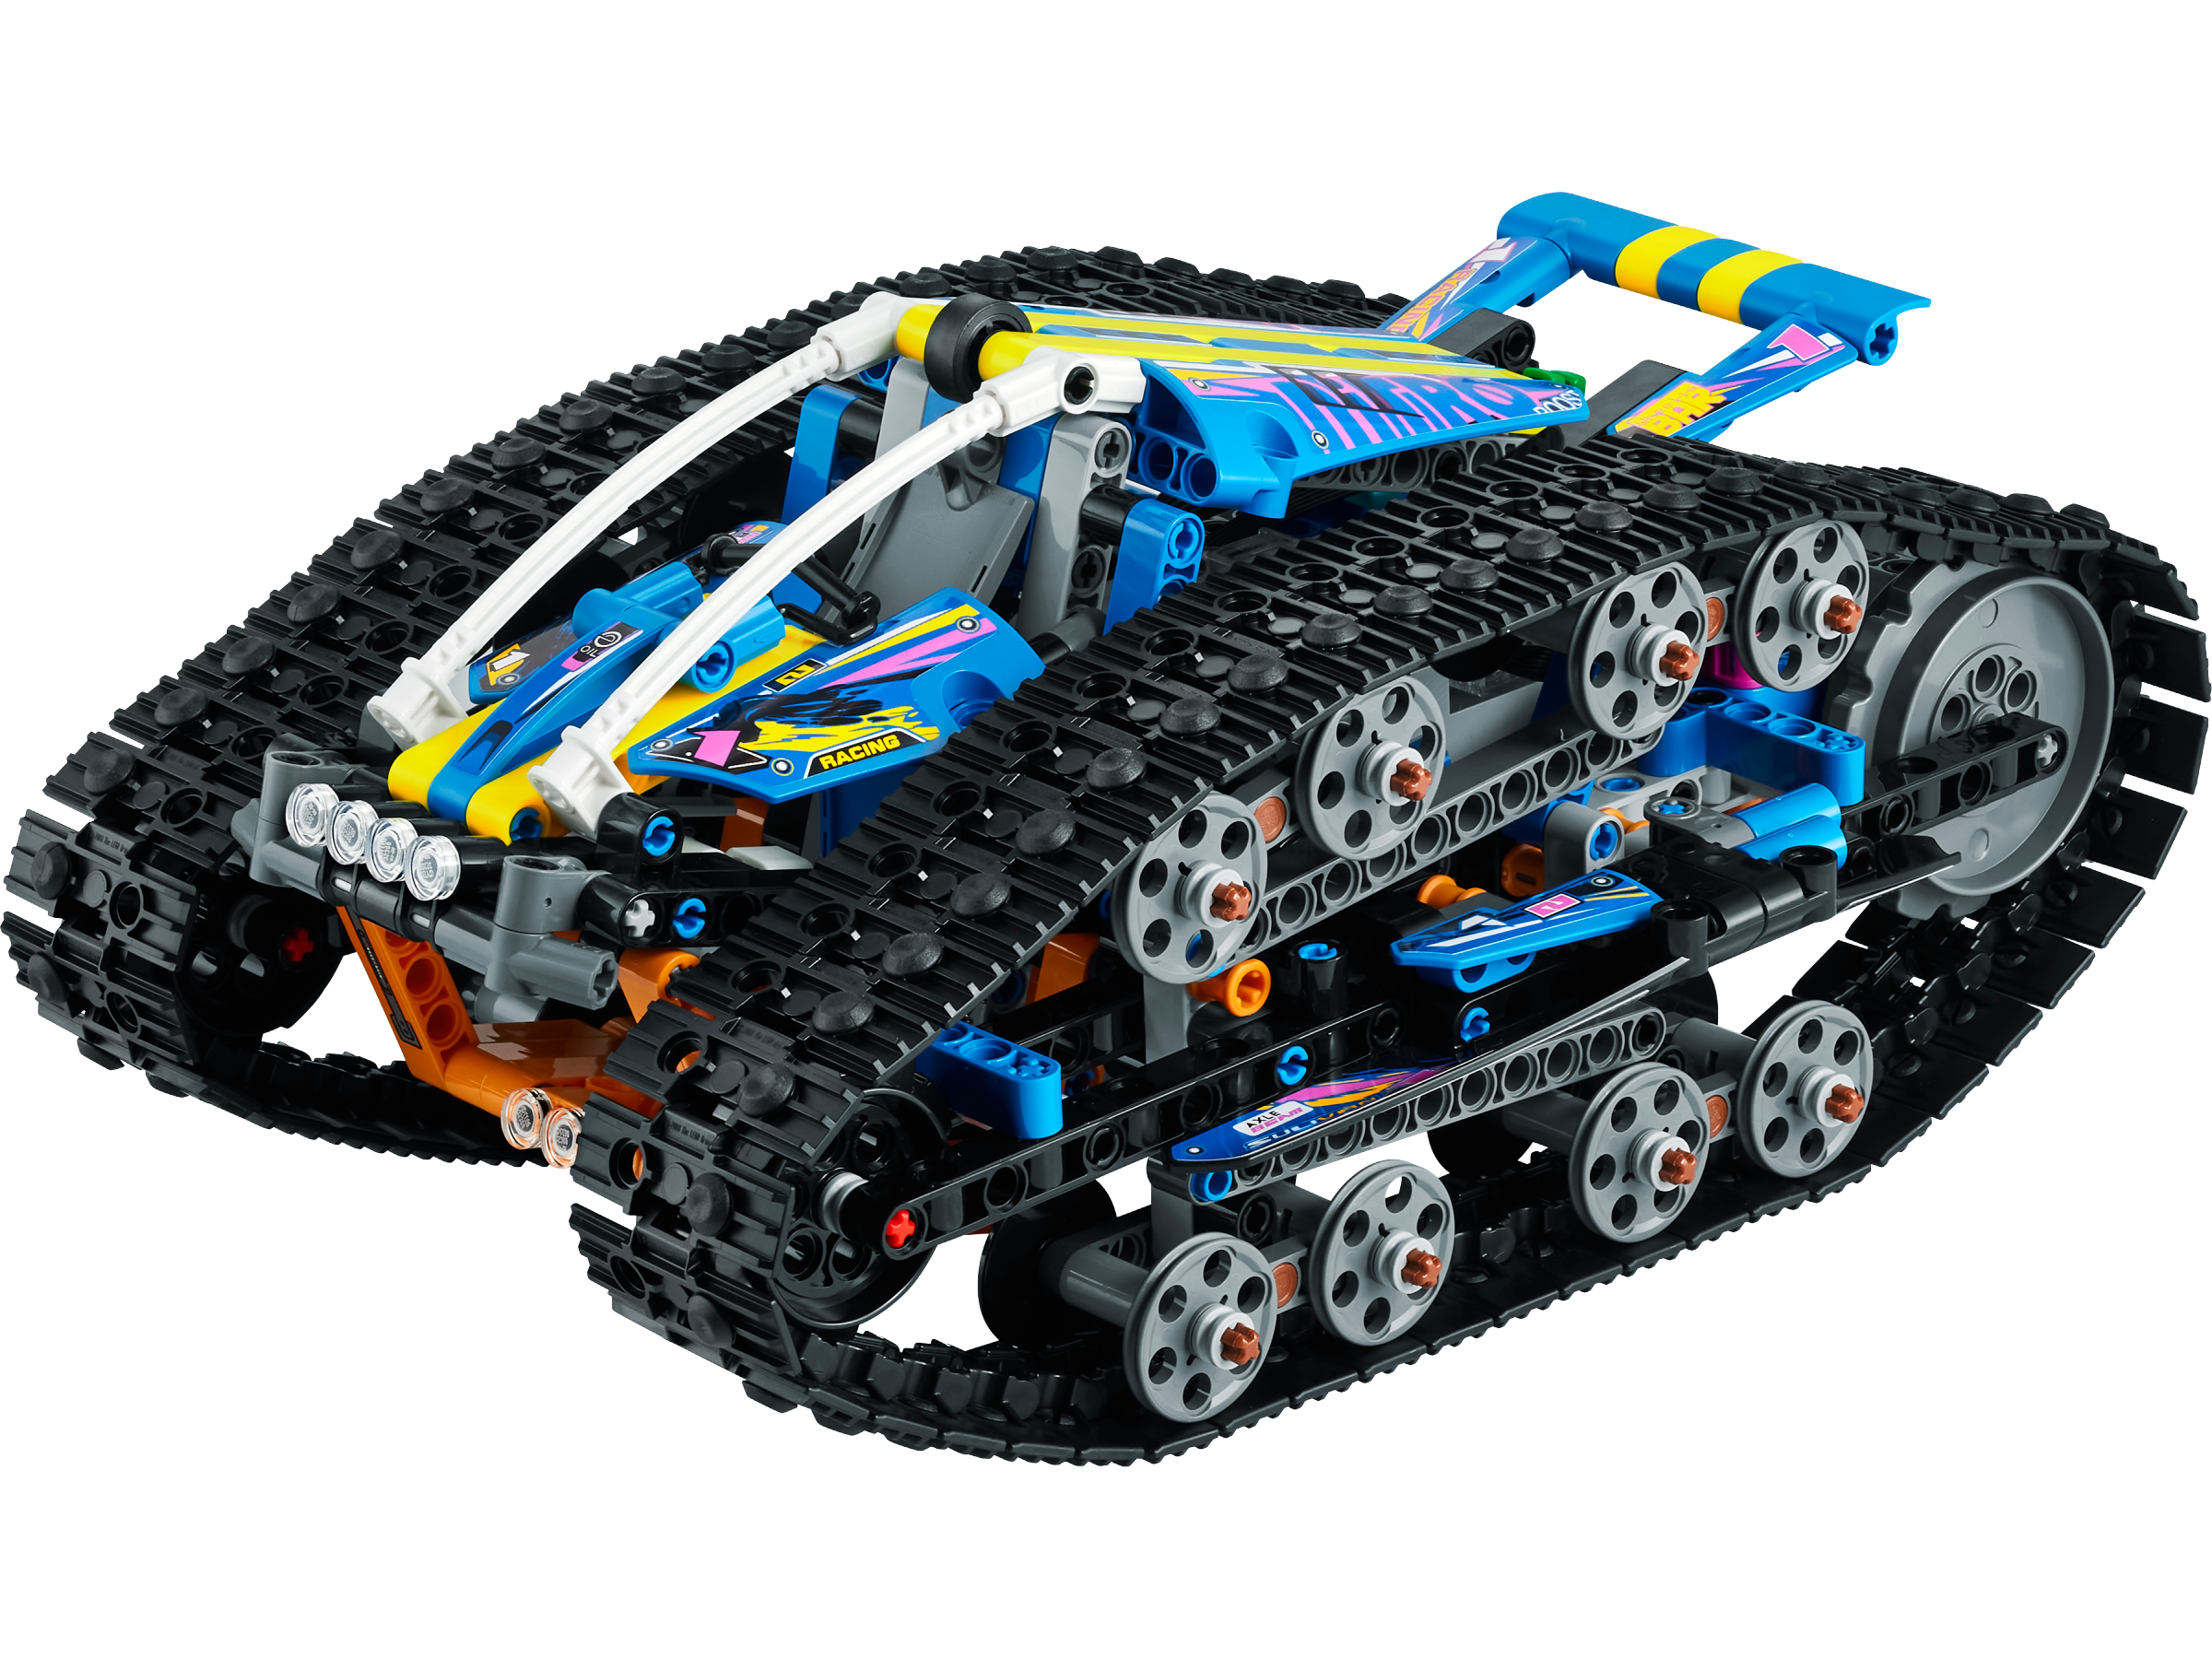 Le véhicule transformable télécommandé 42140 | Technic | Boutique LEGO®  officielle FR